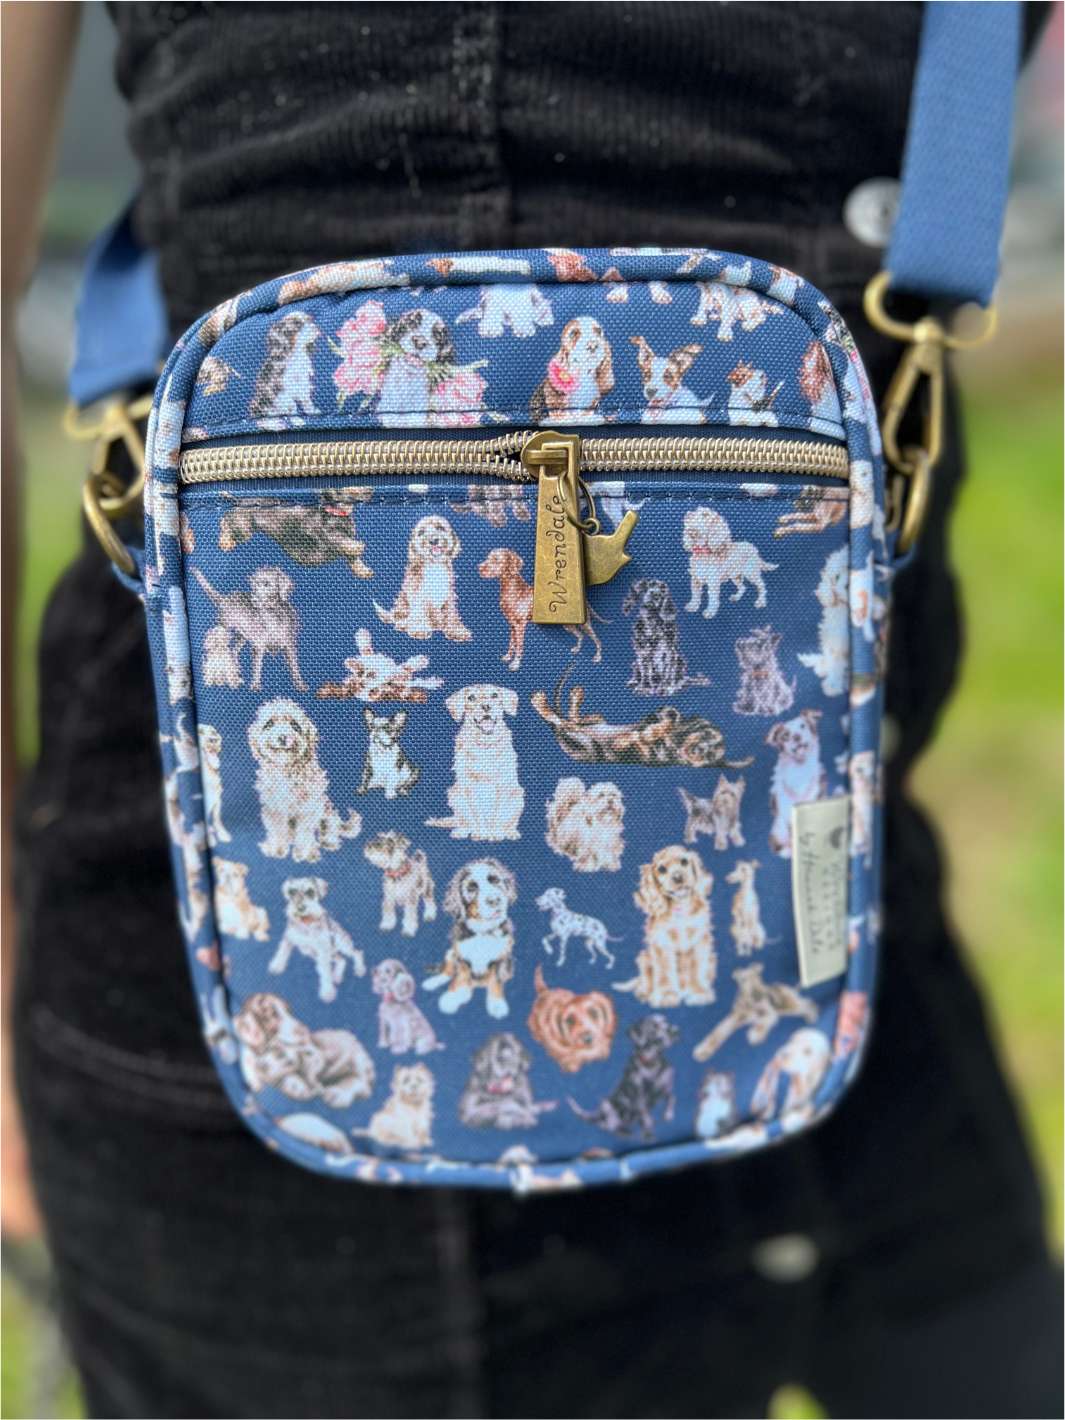 Tasche für Spaziergänge mit Hunden drauf von Wrendale Designs